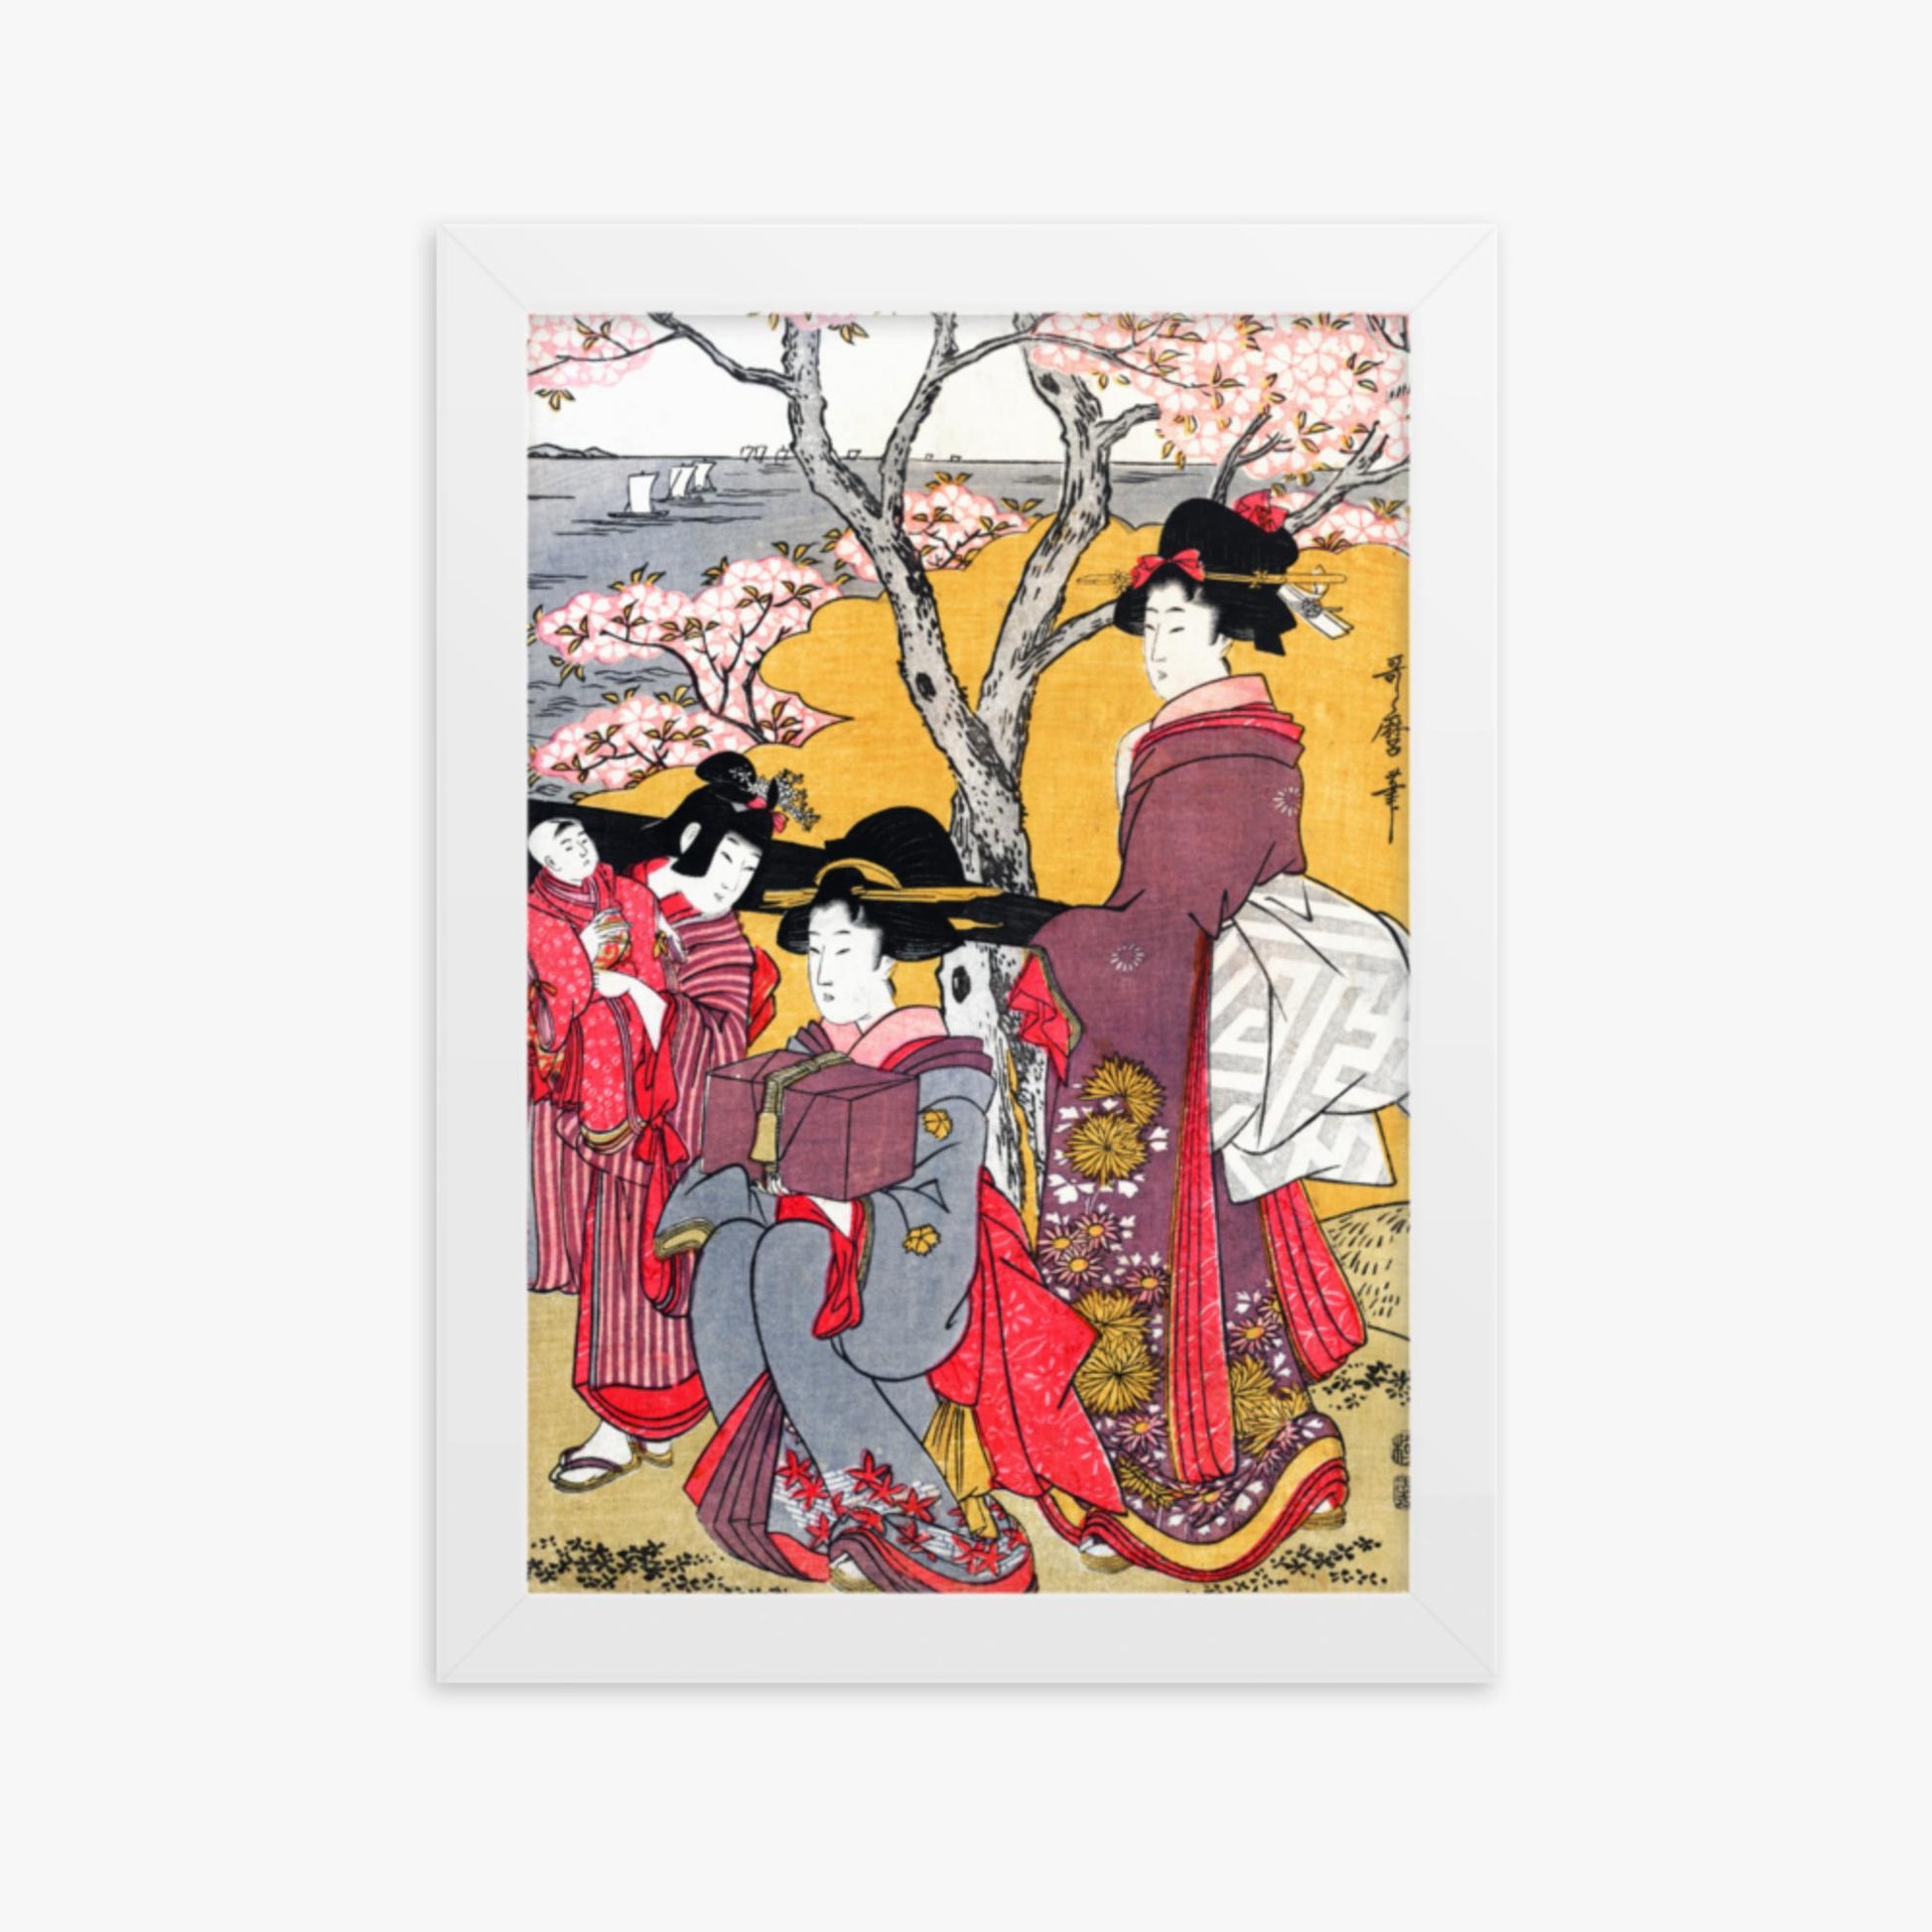 Kitagawa Utamaro - Cherry-viewing at Gotenyama 21x30 cm Poster With White Frame